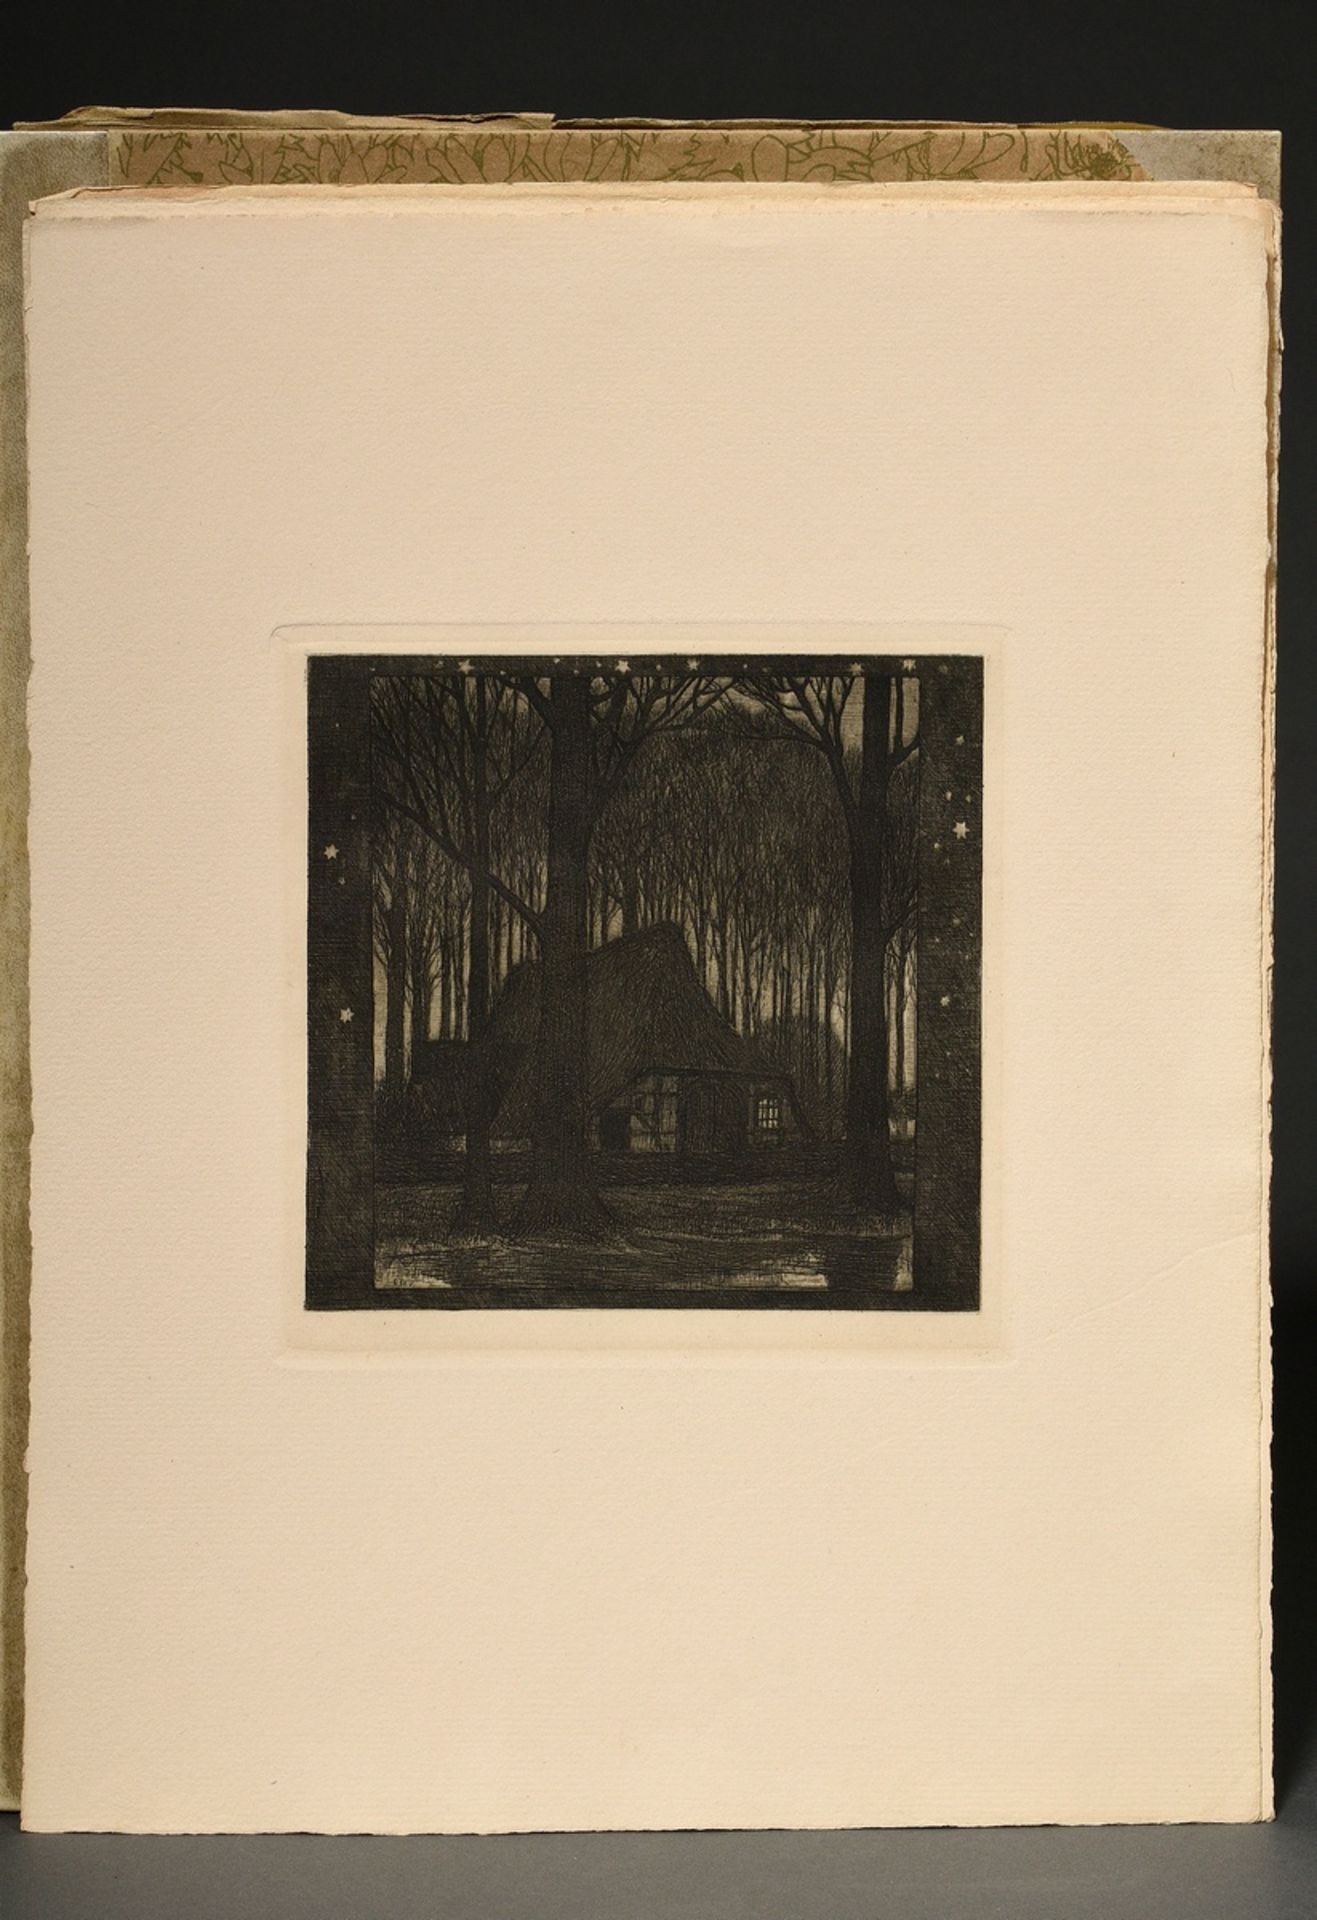 Vogeler, Heinrich (1872-1942) "An den Frühling" 1899/1901, Mappe mit 10 Radierungen und Vorblatt, P - Bild 8 aus 25